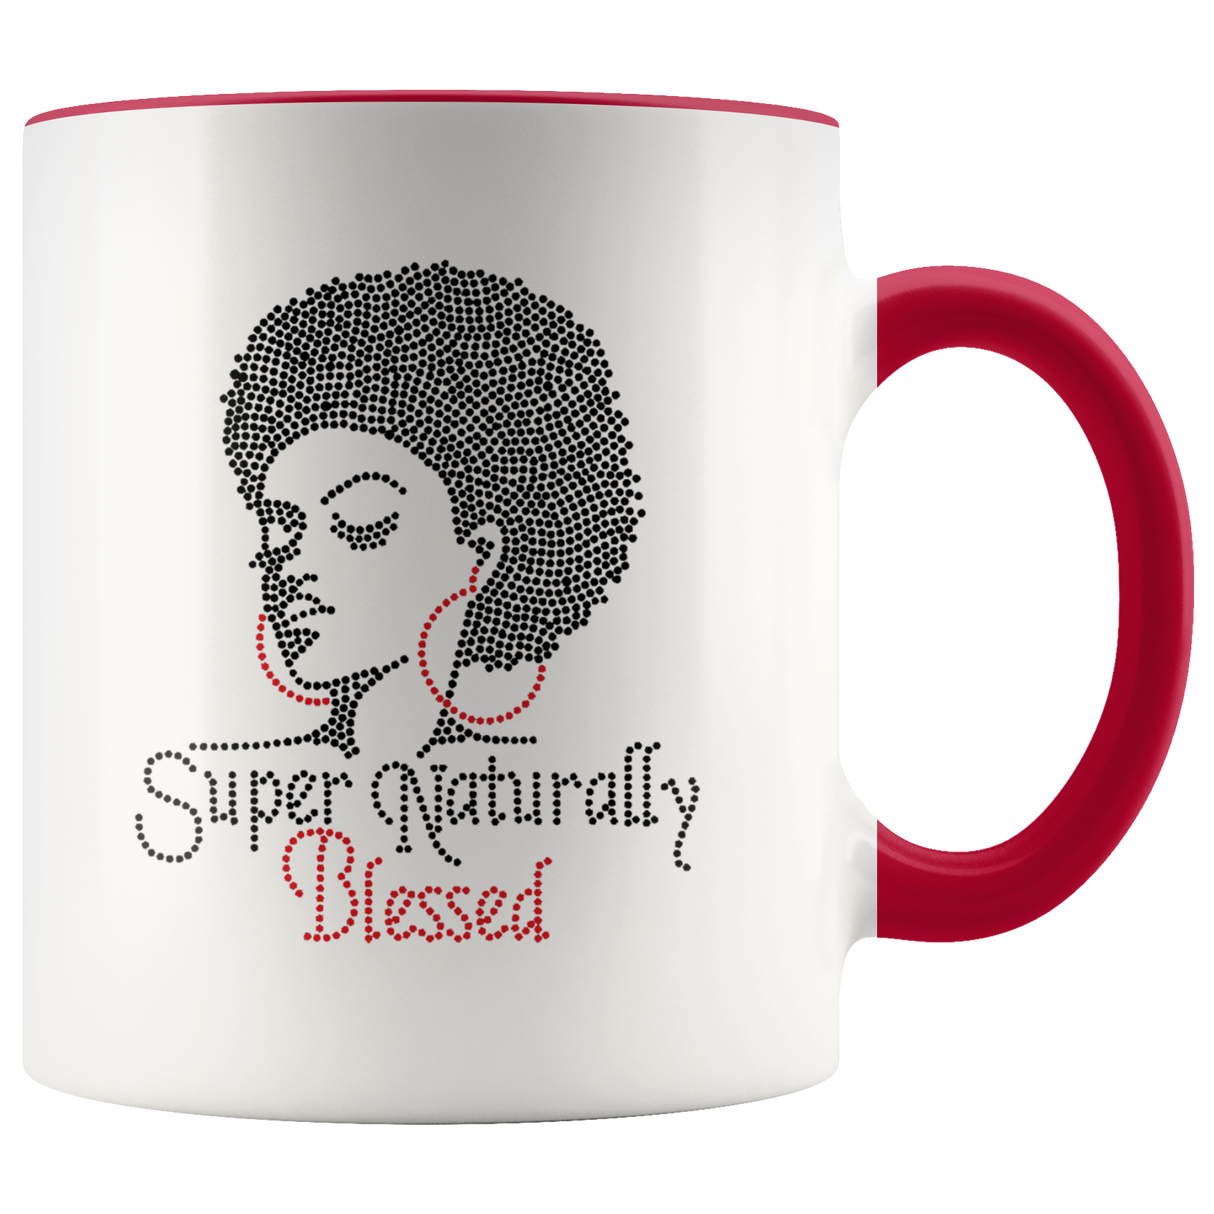 Mug Super Naturally Blessed Ceramic Mug - Red | Shop Sassy Chick